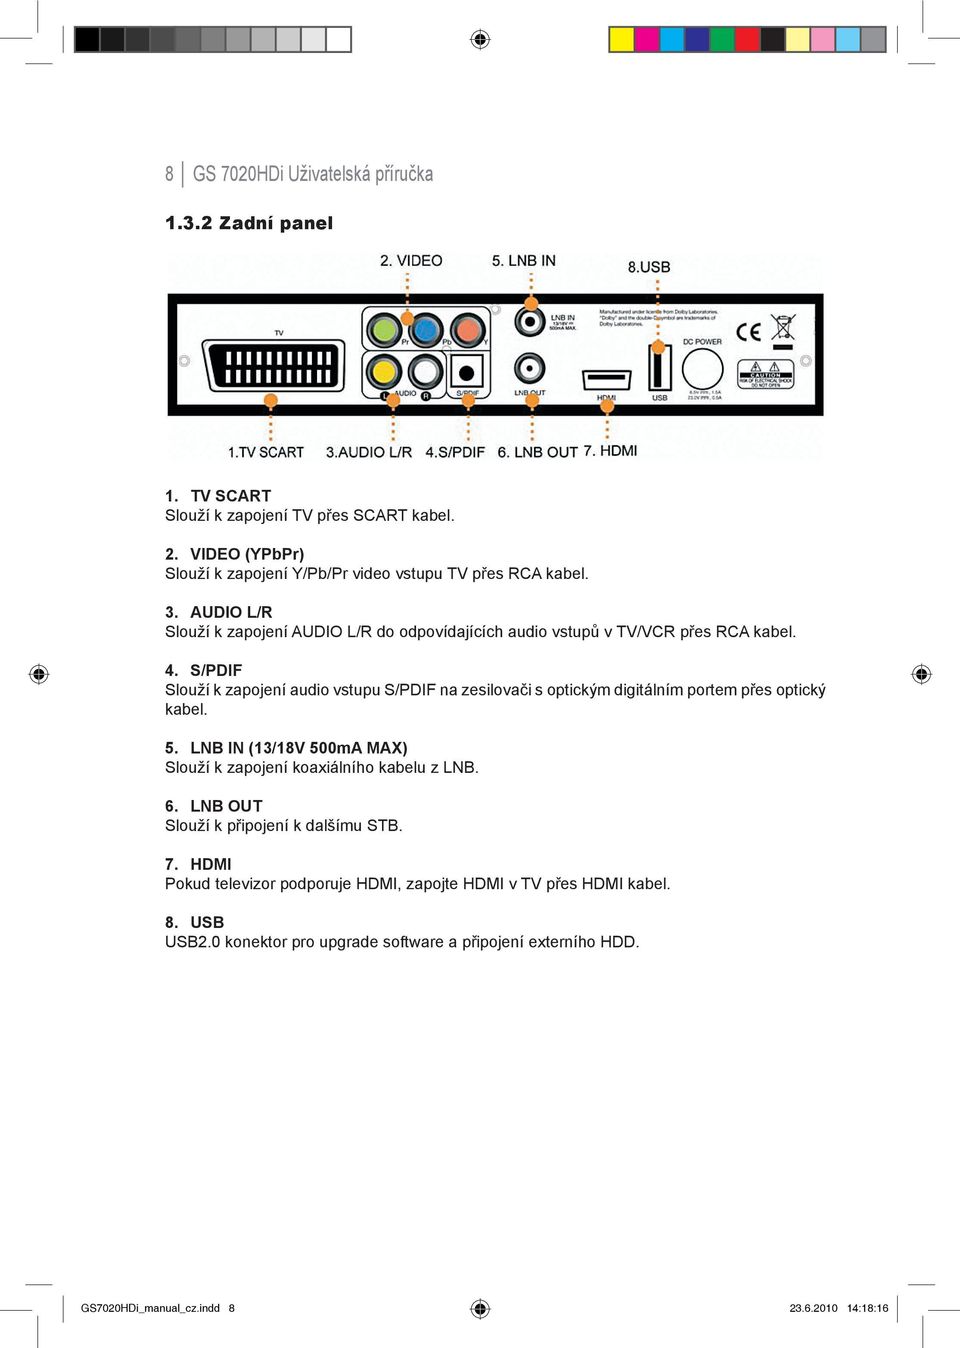 S/PDIF Slouží k zapojení audio vstupu S/PDIF na zesilovači s optickým digitálním portem přes optický kabel. 5.